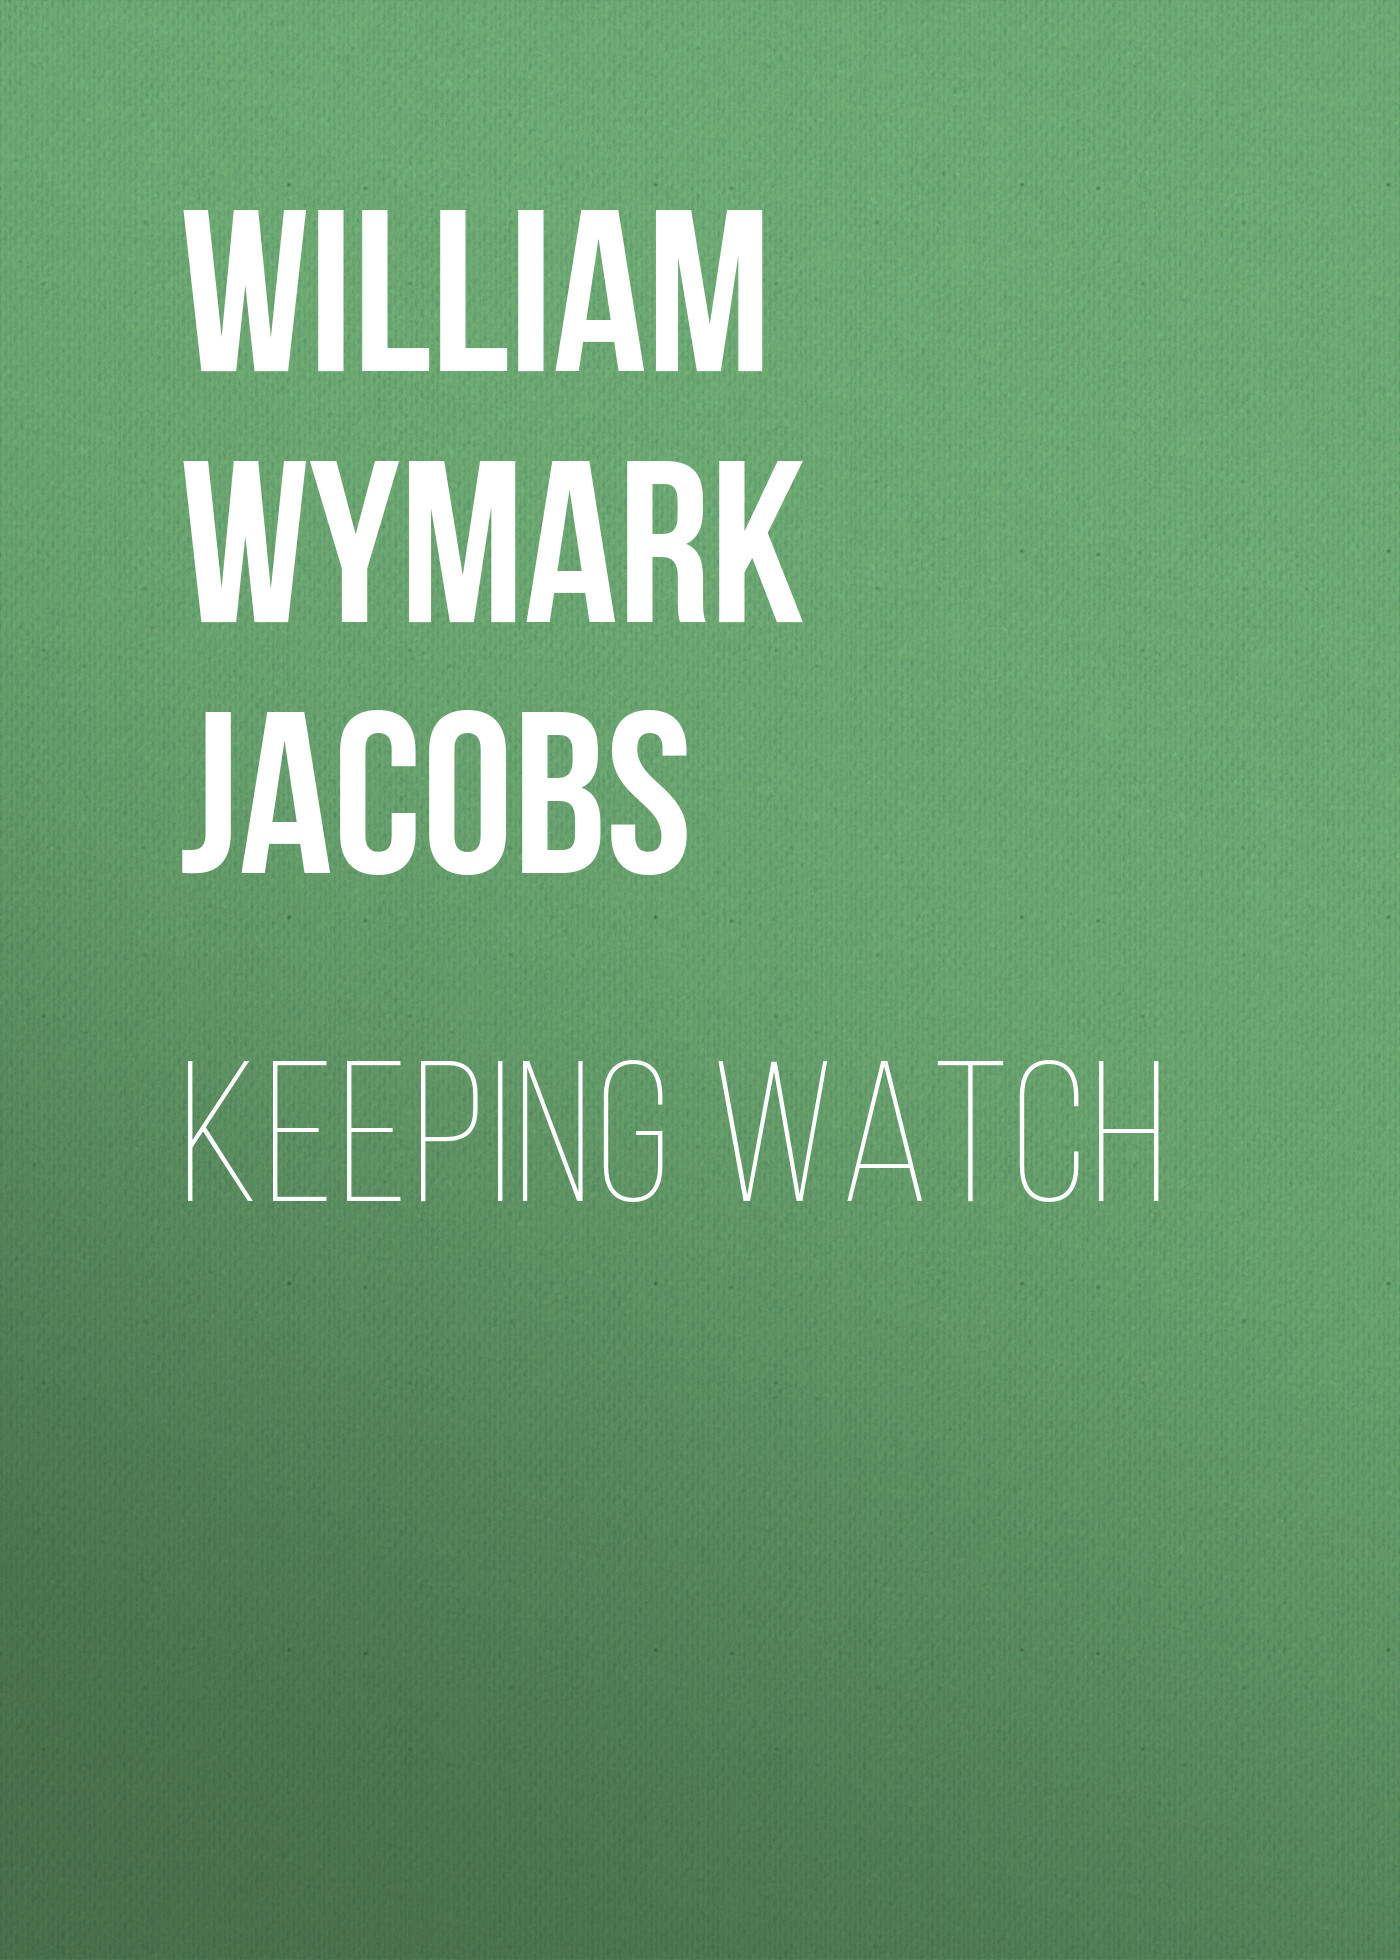 Книга Keeping Watch из серии , созданная William Wymark Jacobs, может относится к жанру Зарубежная классика, Зарубежная старинная литература. Стоимость электронной книги Keeping Watch с идентификатором 34842534 составляет 0 руб.